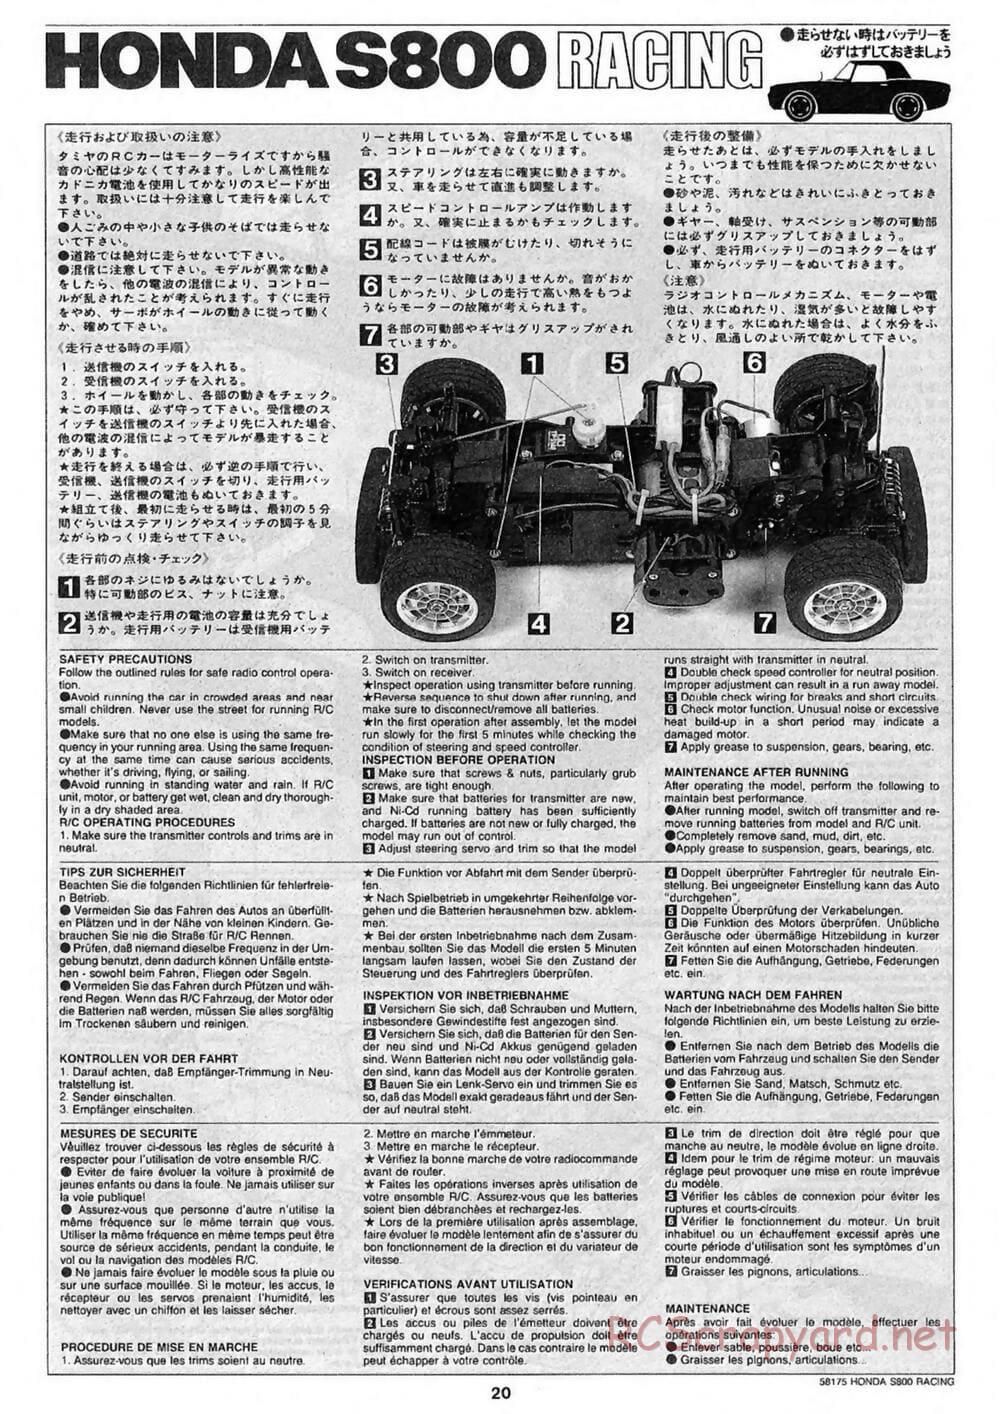 Tamiya - Honda S800 Racing - M02 Chassis - Manual - Page 20